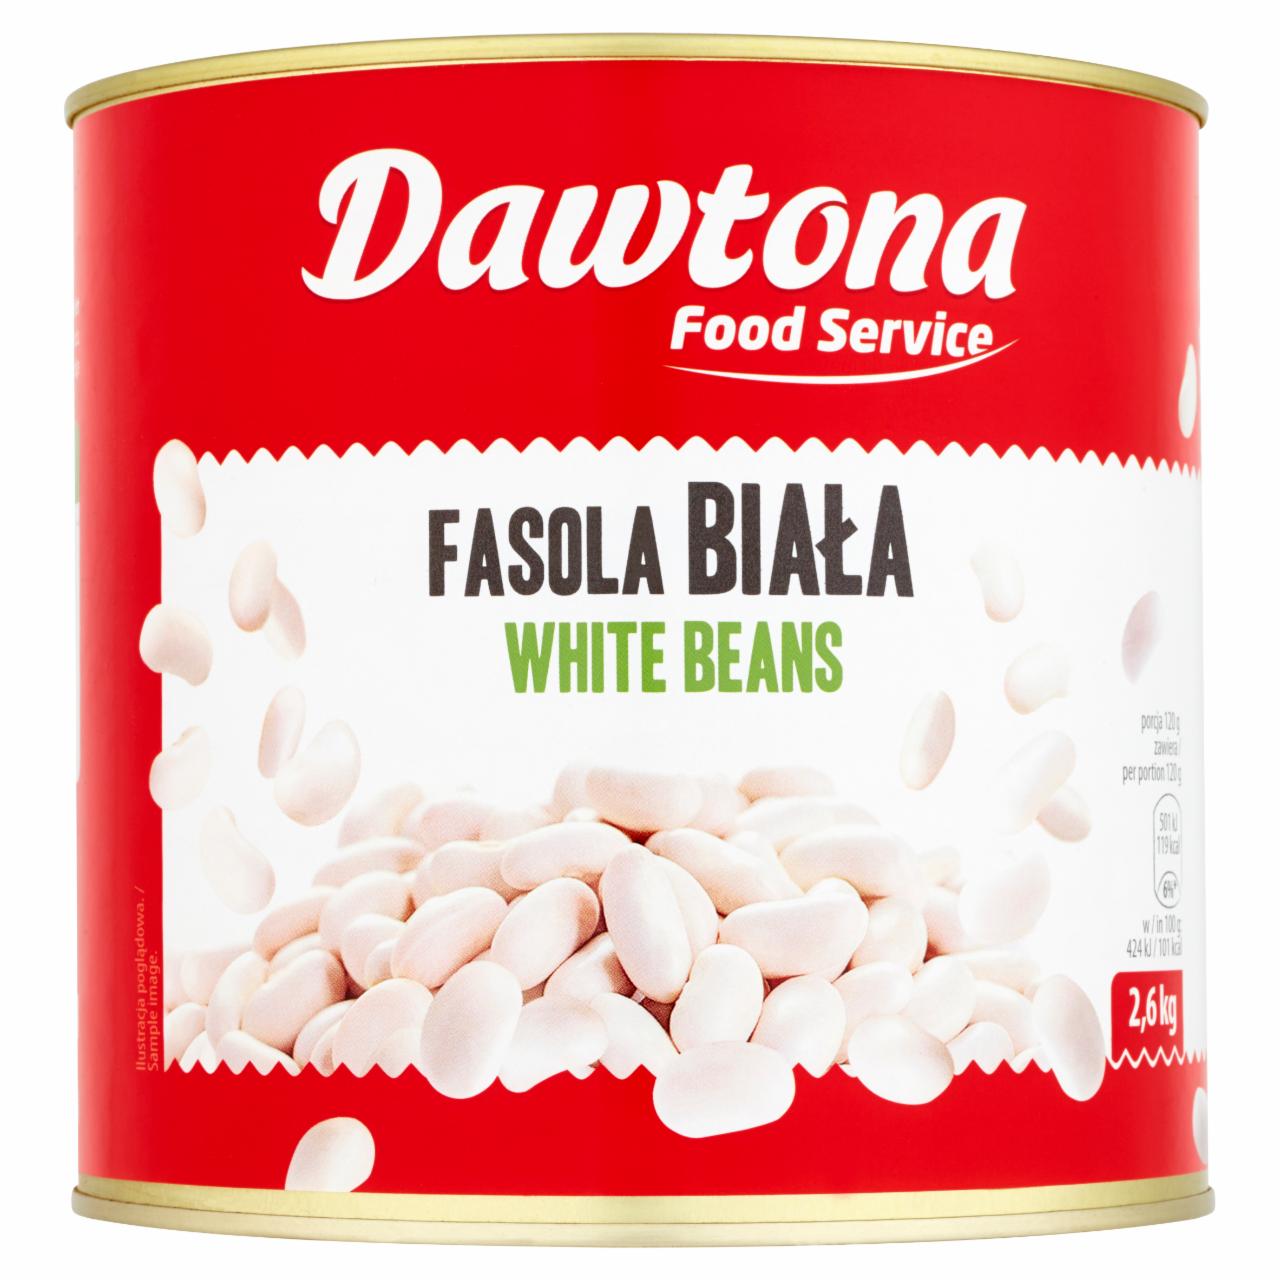 Zdjęcia - Dawtona Food Service Fasola biała 2,6 kg